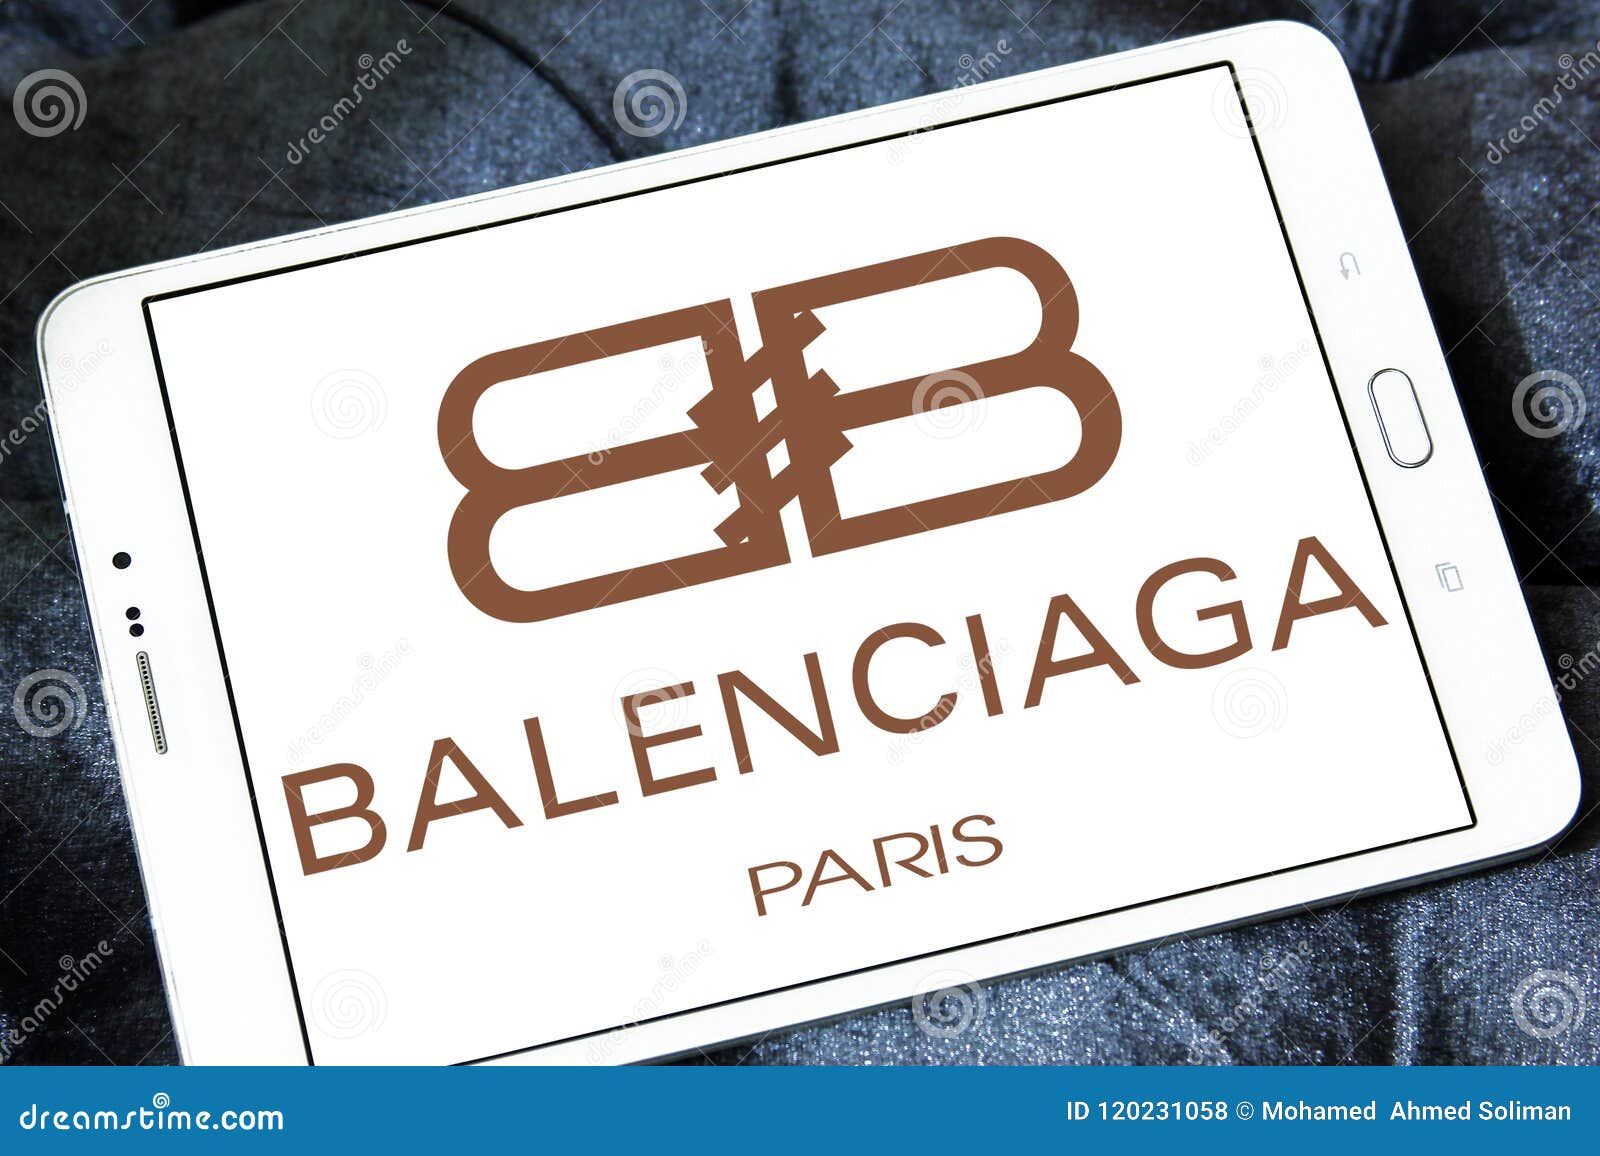 Những bản collab nổi bật của Balenciaga trong năm 2021  Bùi Store